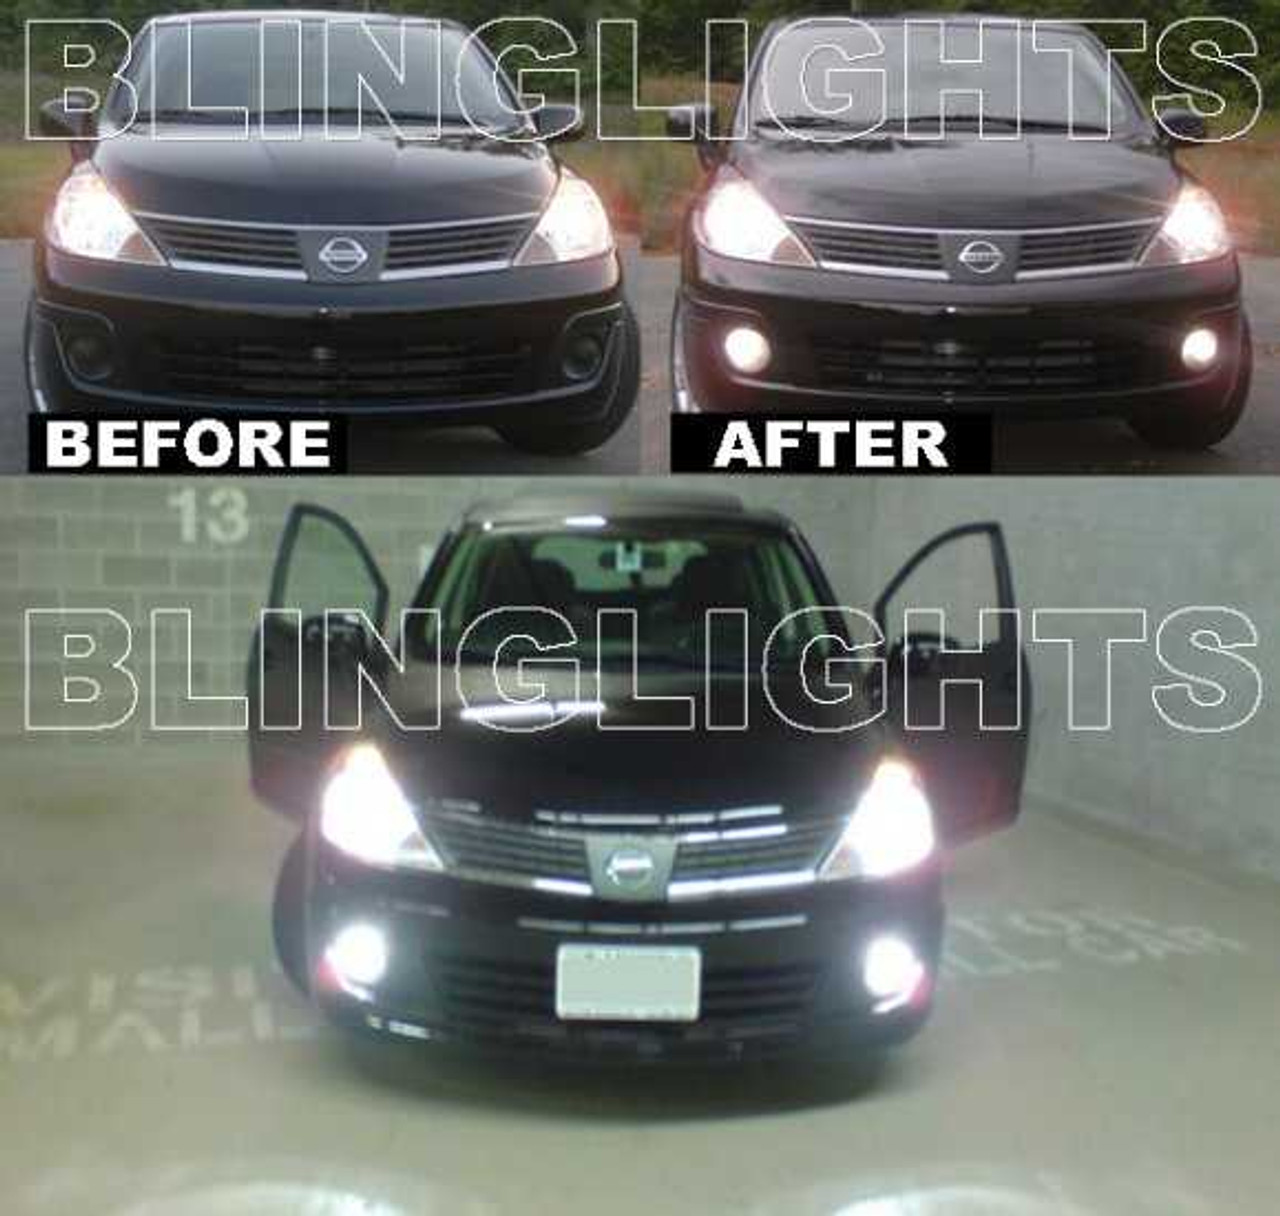 BlingLights Brand Fog Lights for 2007 2008 2009 2010 2011 Nissan Versa C11